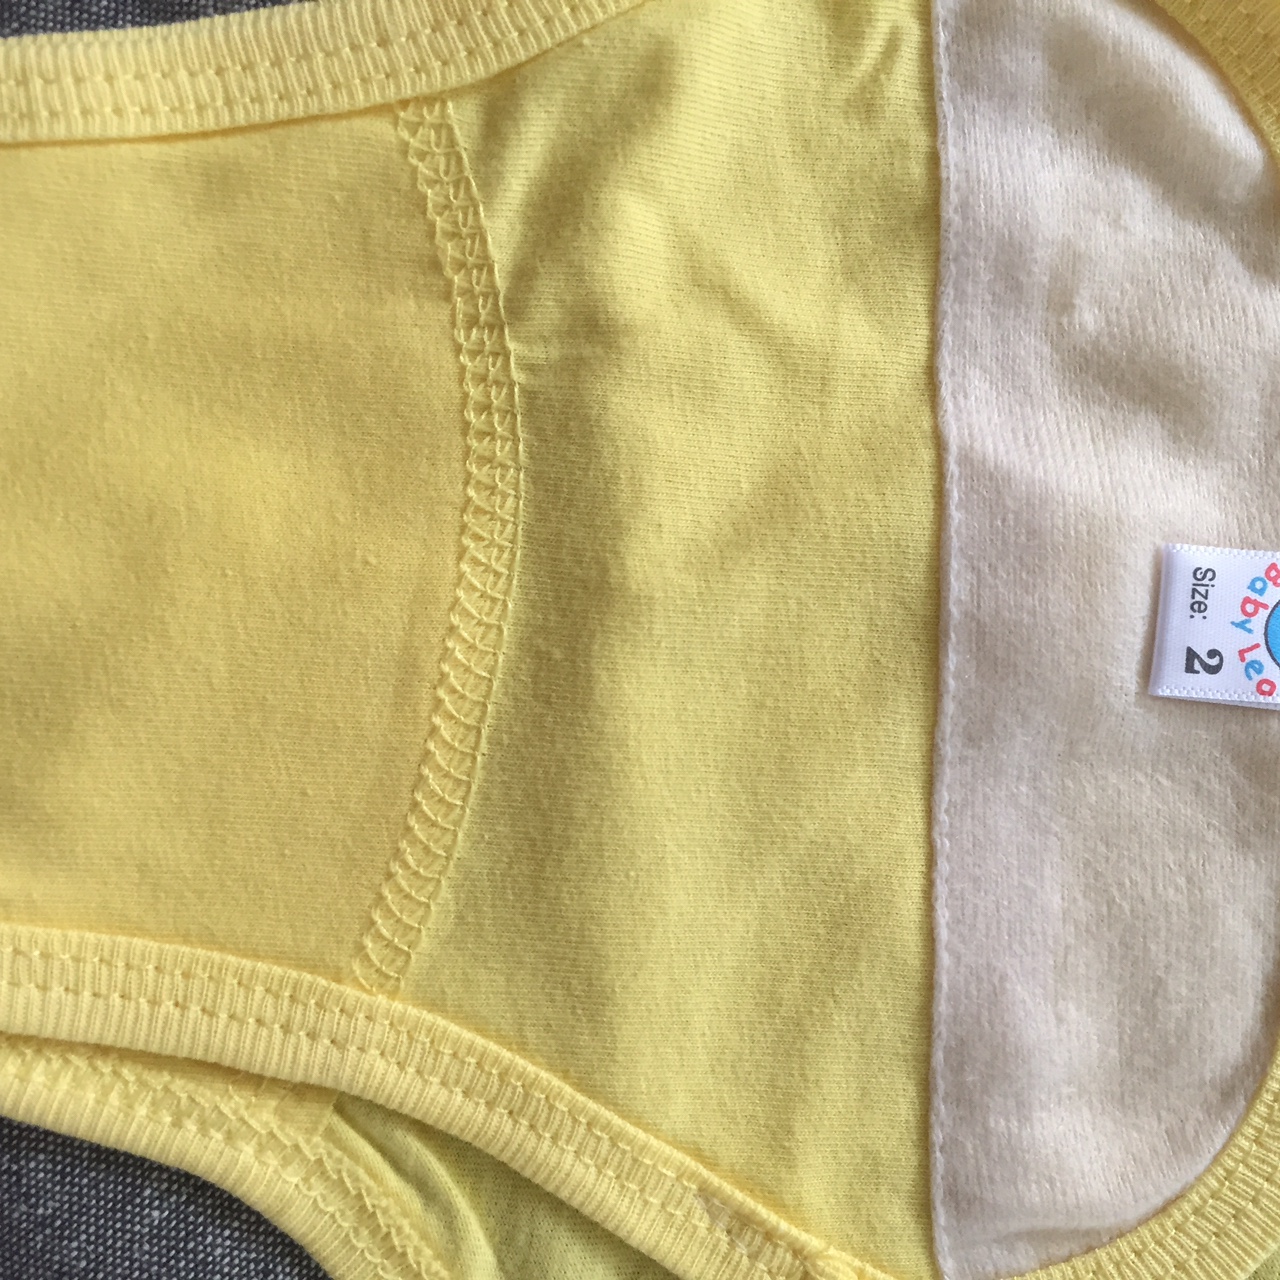 Combo 5 tả vải, tả dán cotton mềm, mịn cho bé sơ sinh Thái Hà Thịnh ( tặng kèm 1 đôi tất sơ sinh amigo như hình)